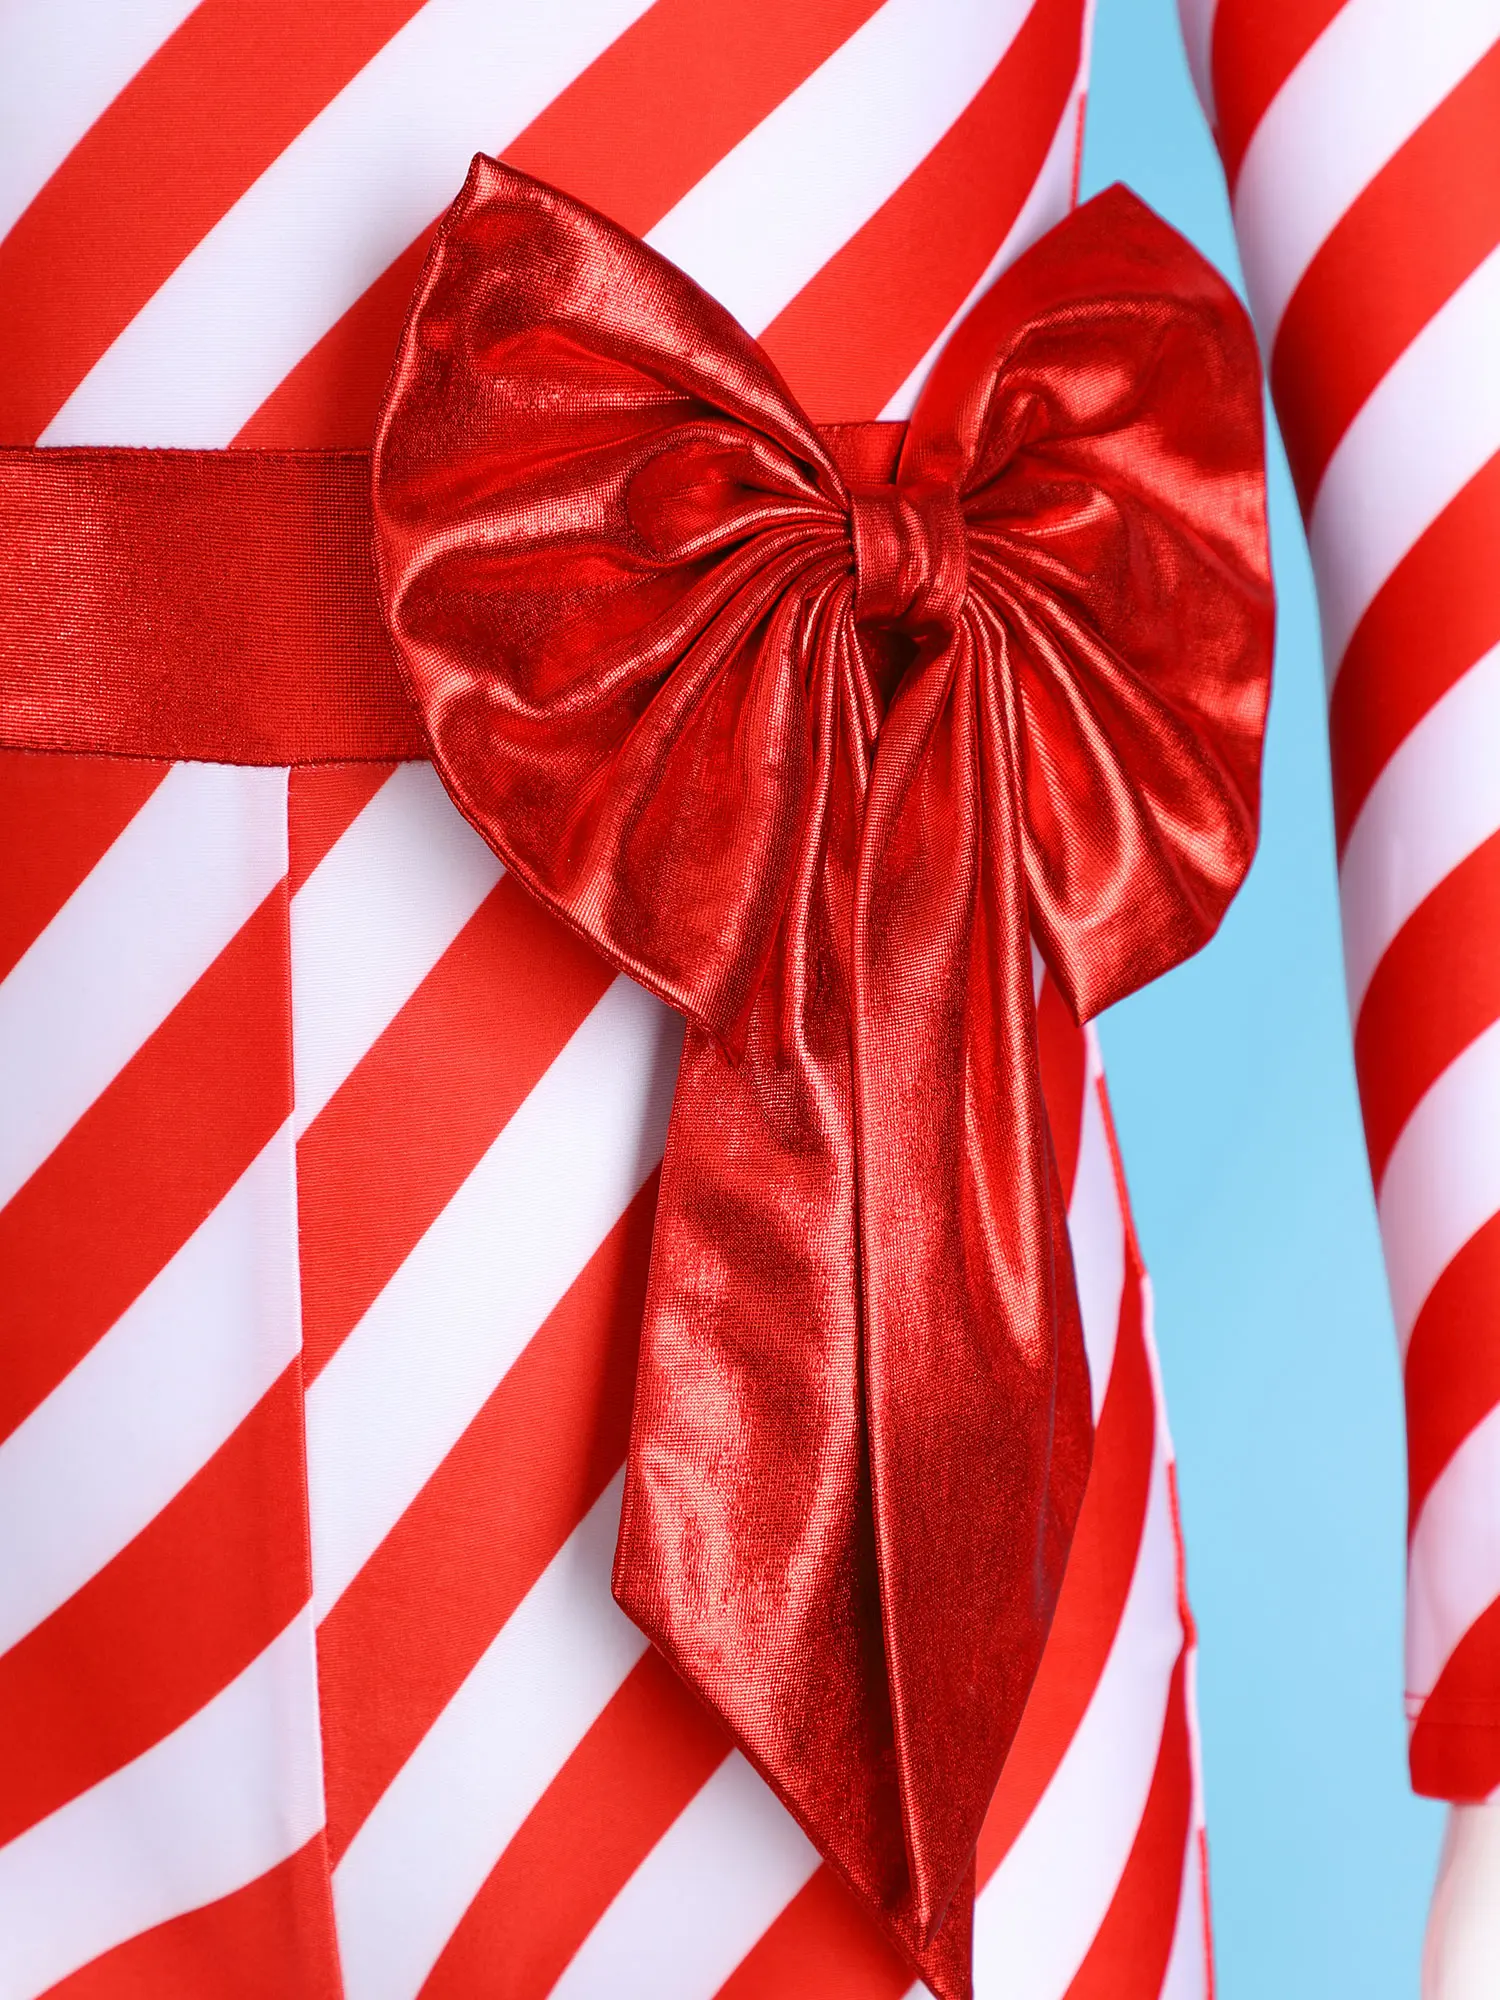 Gyereklányok karácsonyi cukorka nád jelmez csokorcsolyás csomó csíkos hosszú ujjú torna unitard bodyt műkorcsolya táncruhához - 4